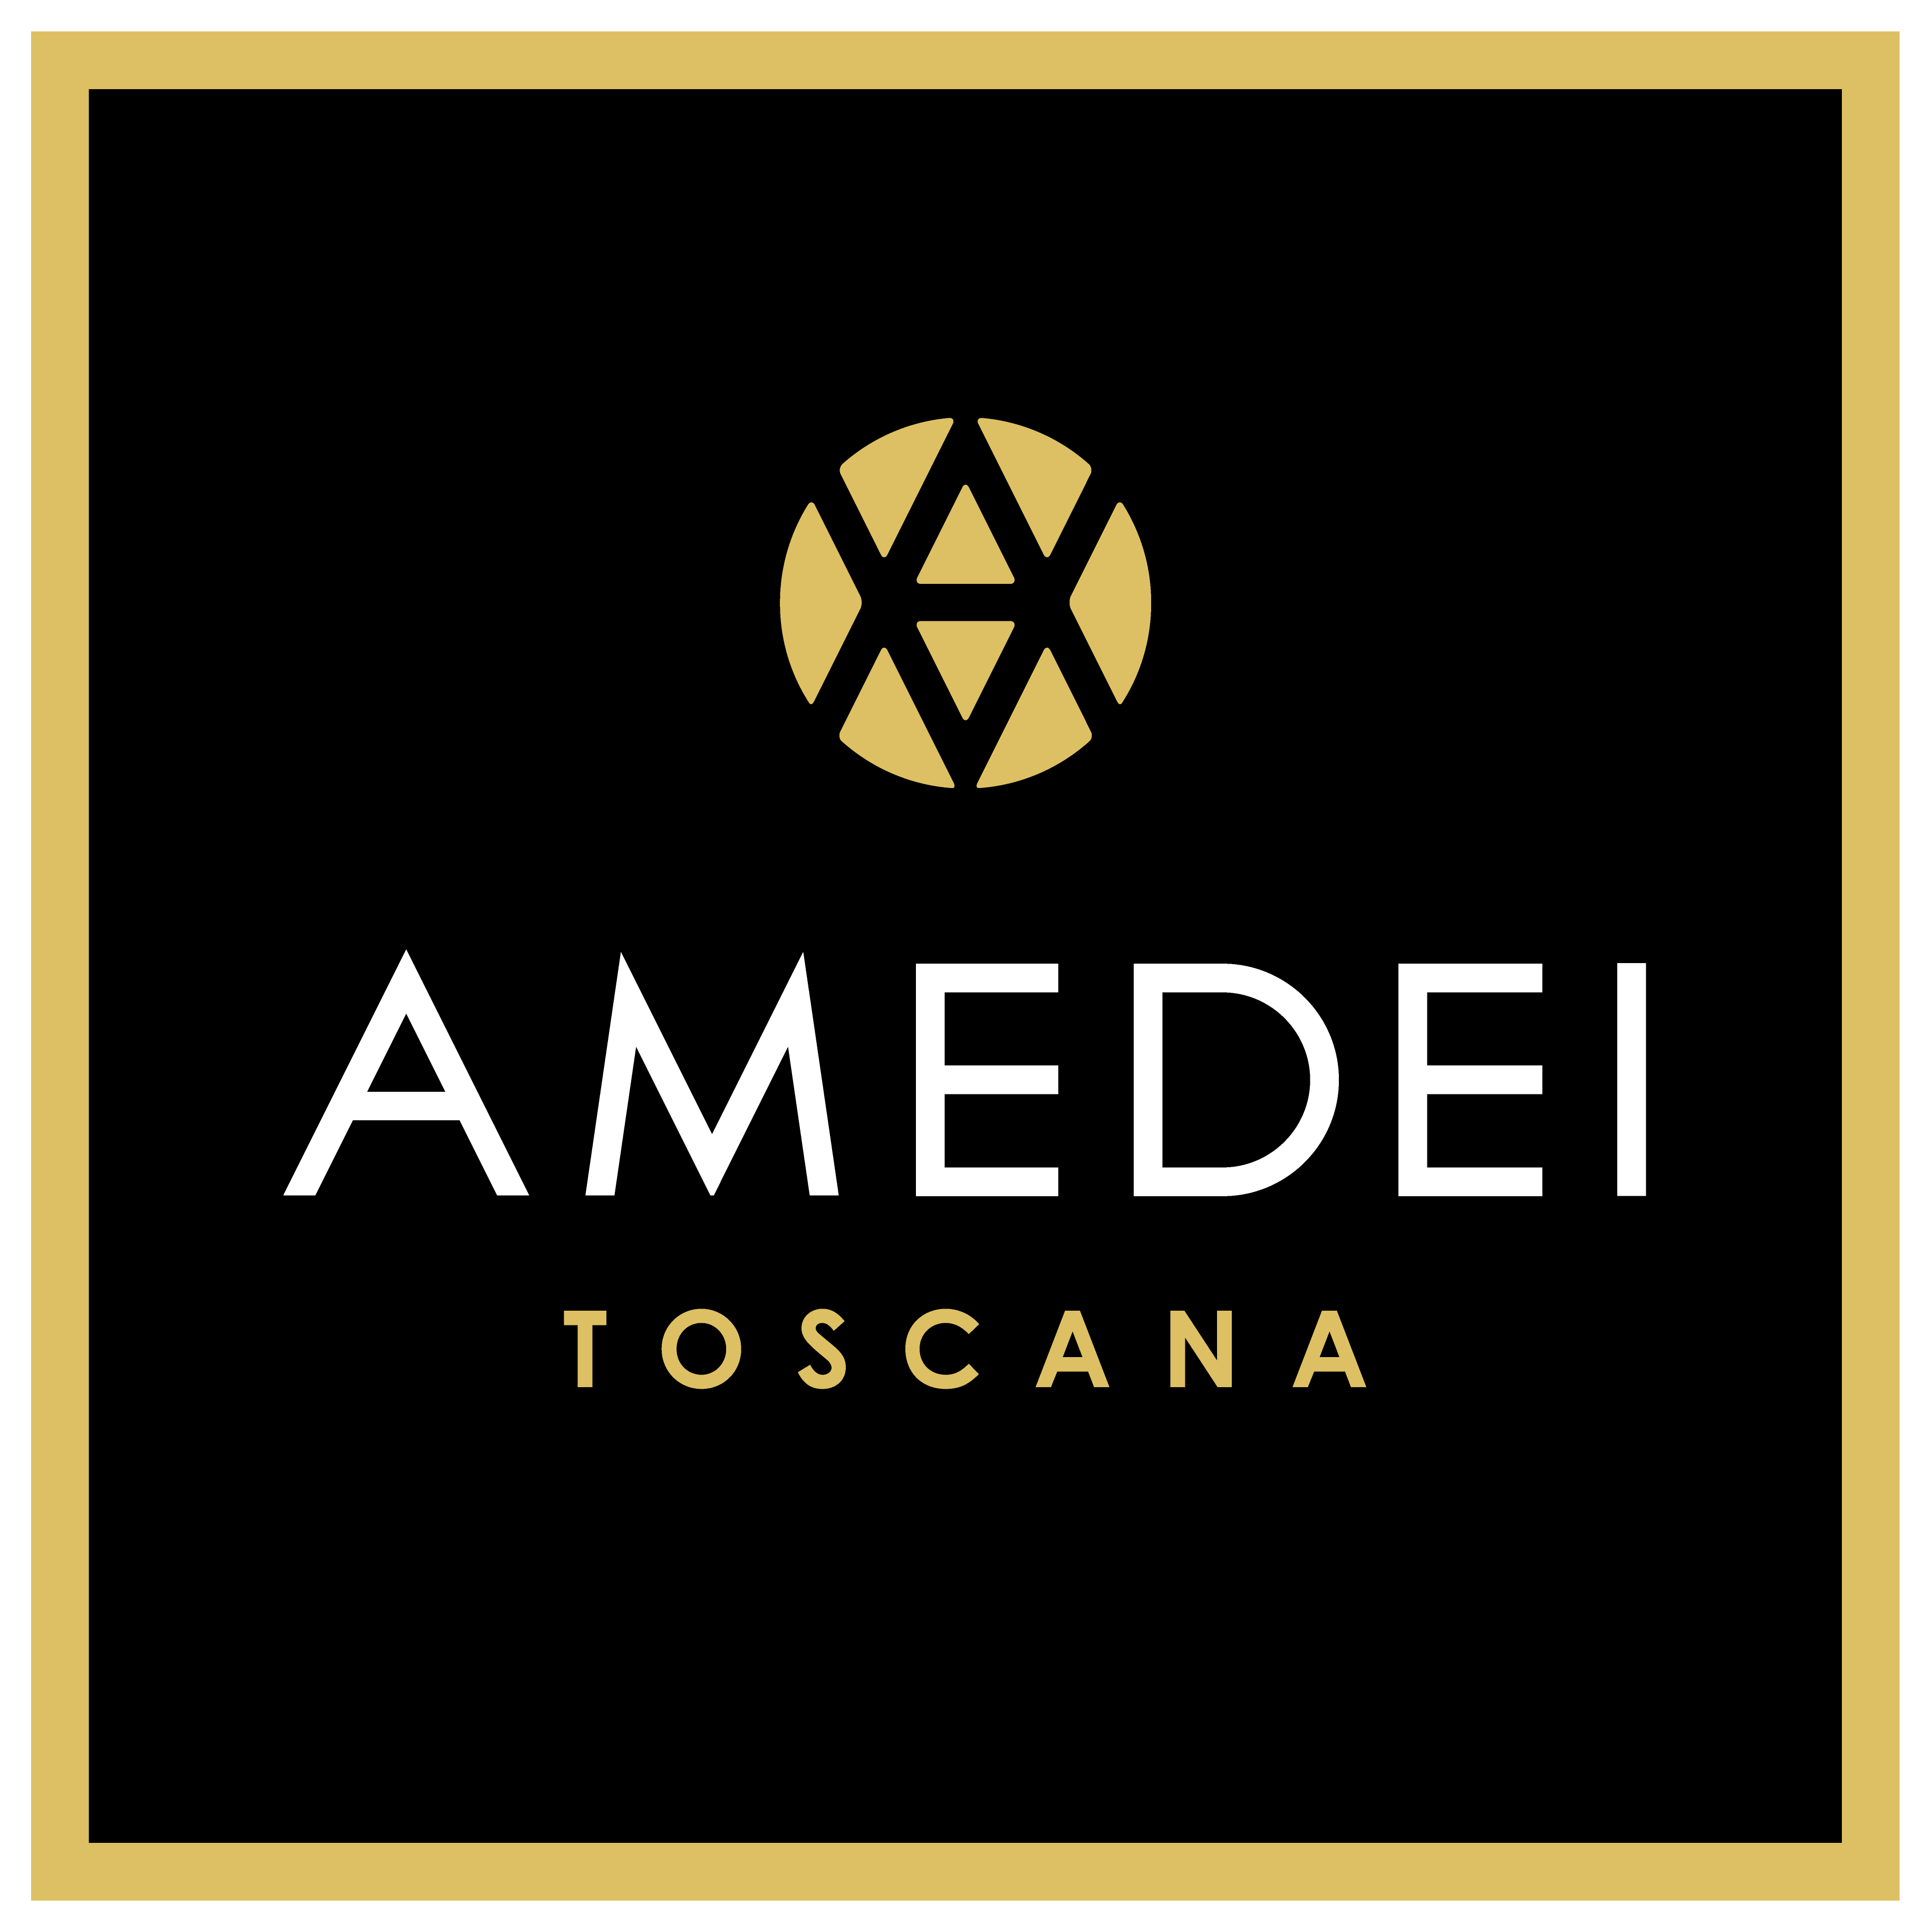 Amedei Logo